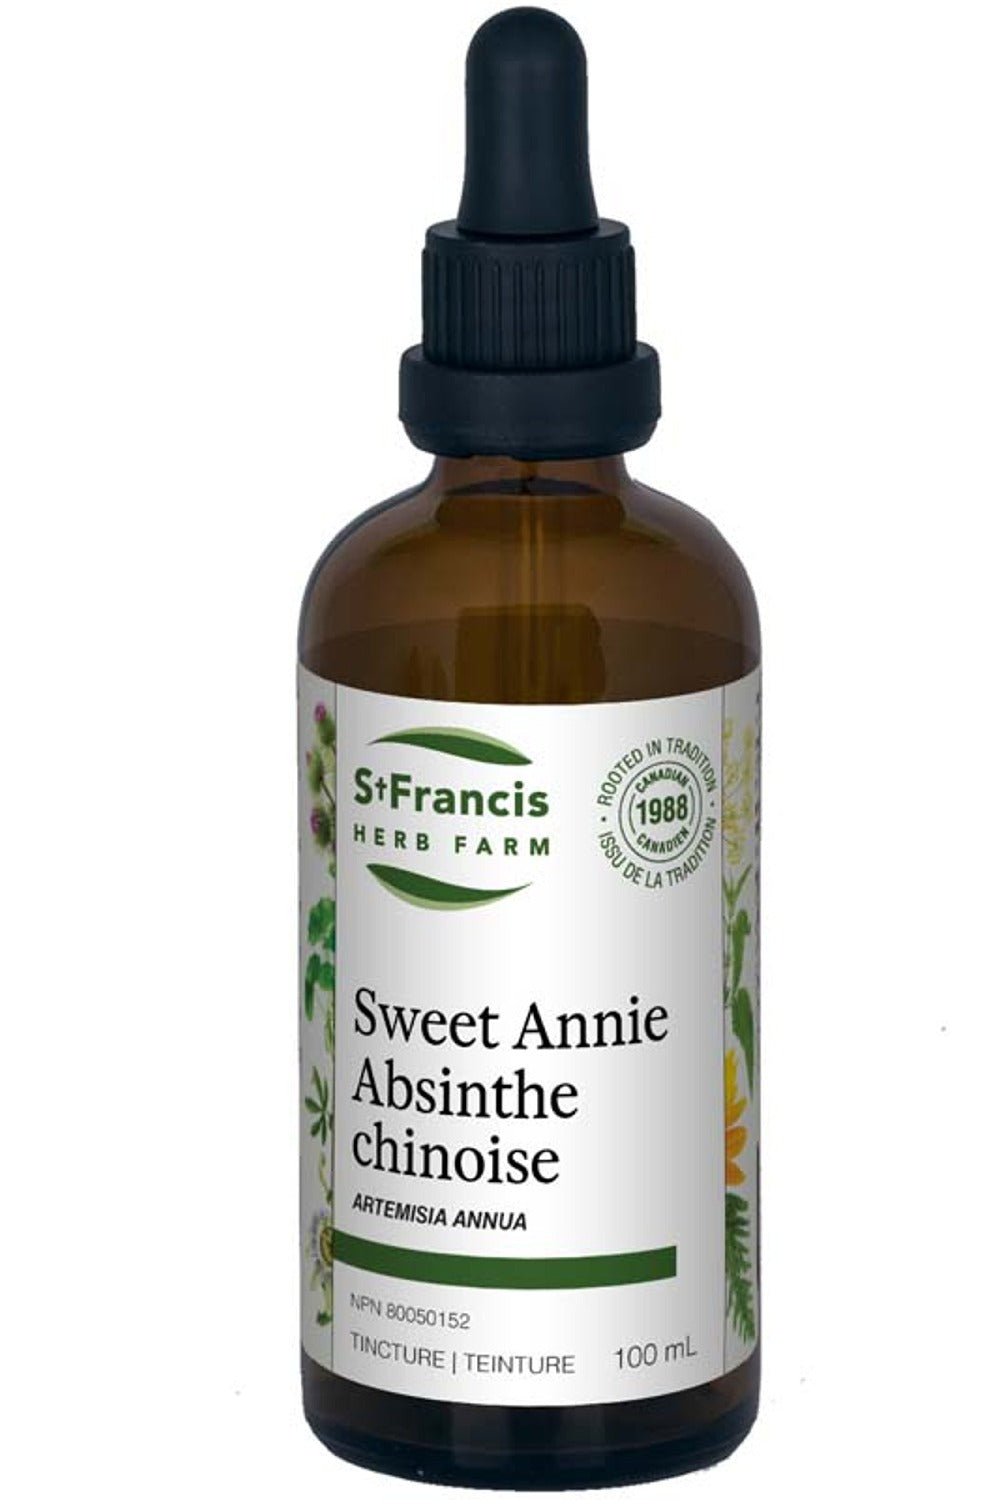 ST FRANCIS HERB FARM Sweet Annie (100 ml)